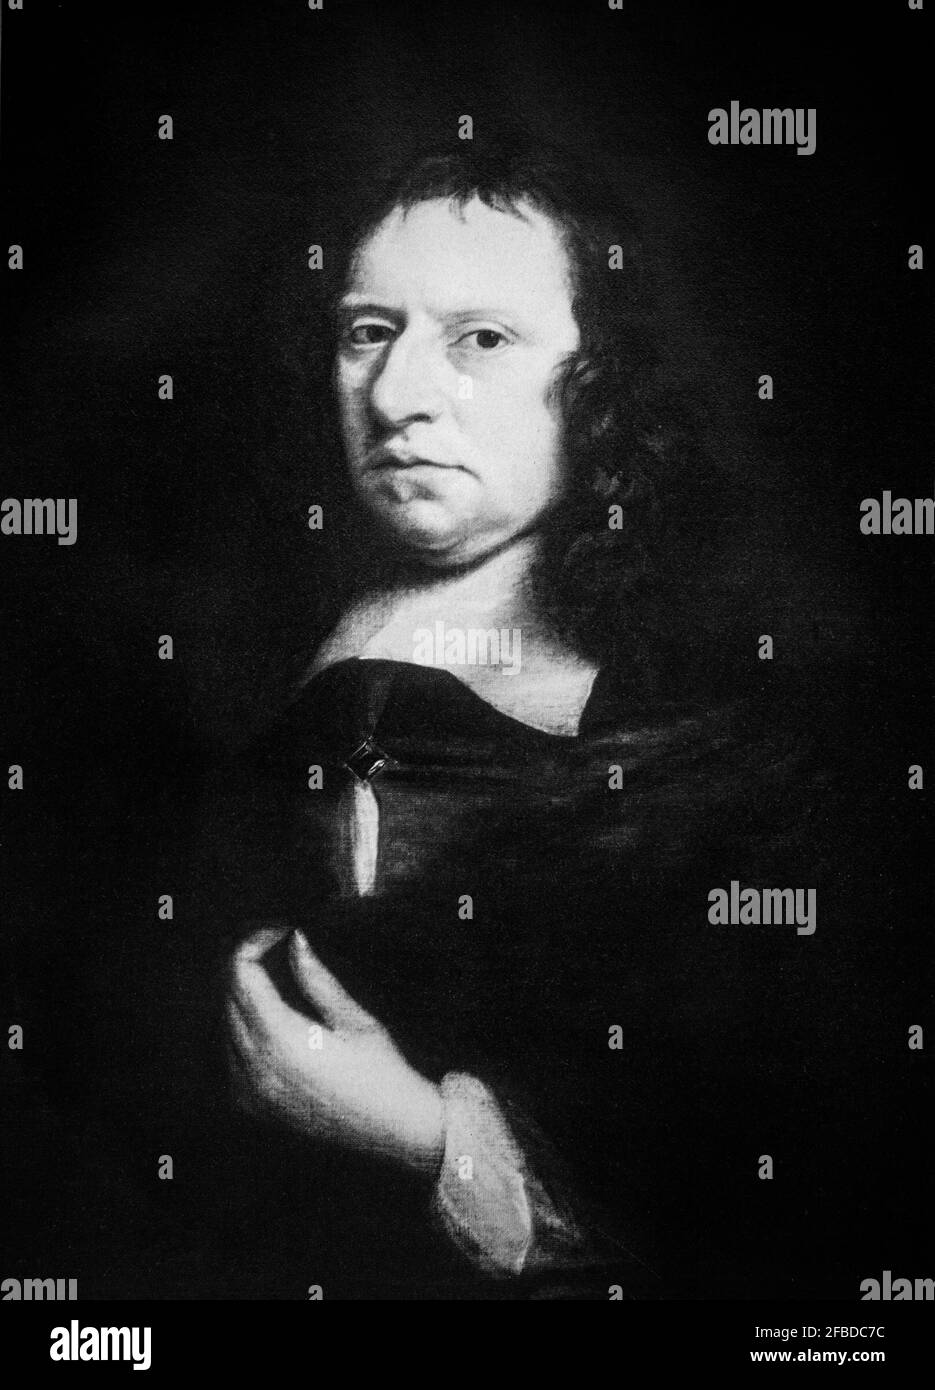 Ein Porträt von Oliver Cromwell (1599-1658), englischem General und Staatsmann, der zuerst als Untergebener und später als Oberbefehlshaber während des englischen Bürgerkrieges Armeen des englischen Parlaments gegen König Karl I. führte. Danach regierte er von 1653 bis zu seinem Tod im Jahr 1658 als Lord Protector auf den Britischen Inseln und fungierte gleichzeitig als Staatsoberhaupt und Regierungschef des neuen republikanischen Gemeinwohls. Stockfoto